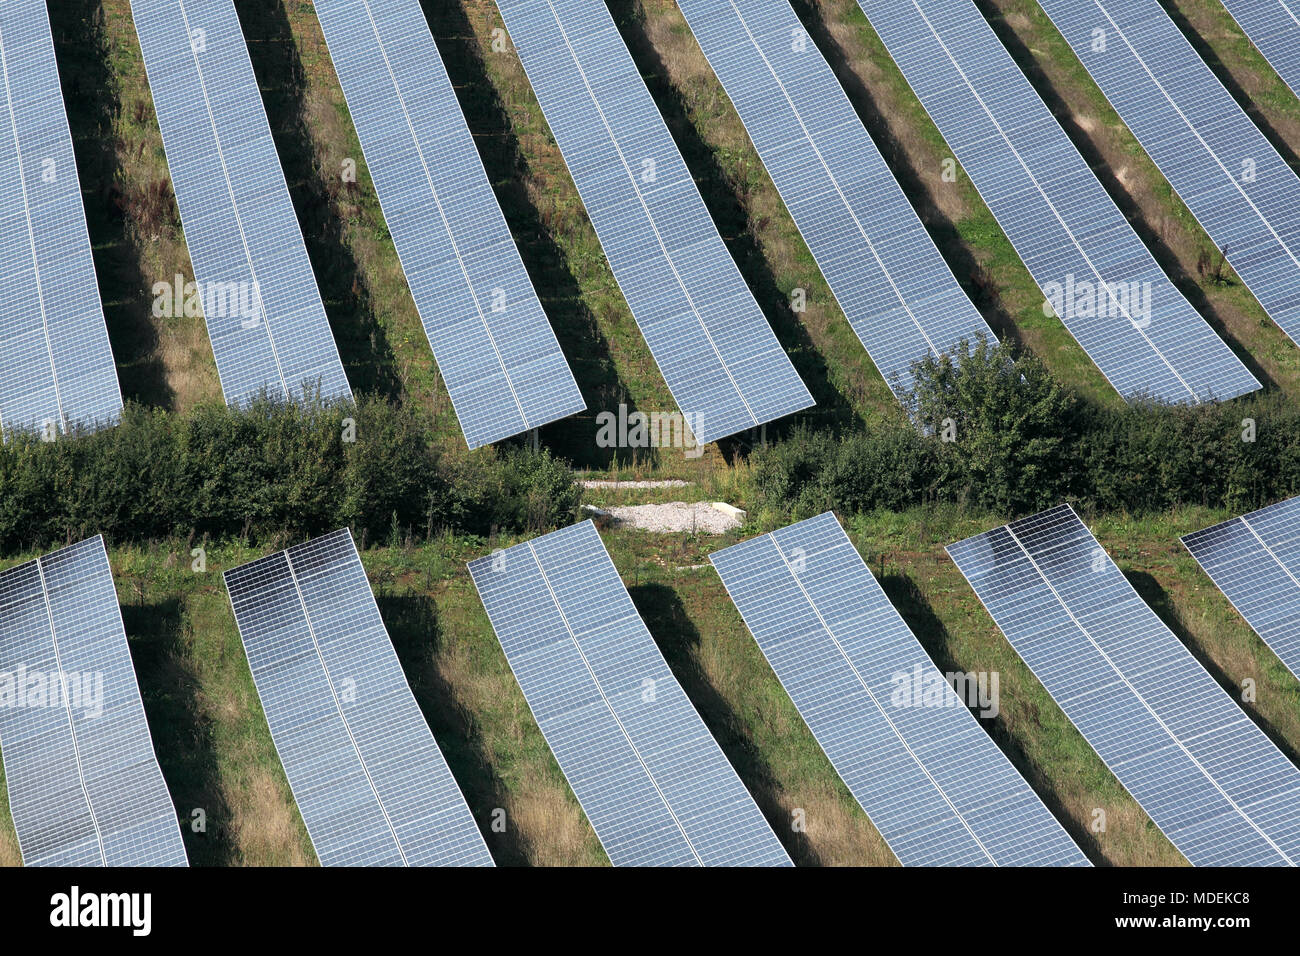 Auf einige Der photovoltaic Arrays, die die Milborne Port Solar Farm, in der Nähe der Milborne Port, Somerset umfassen. Stockfoto